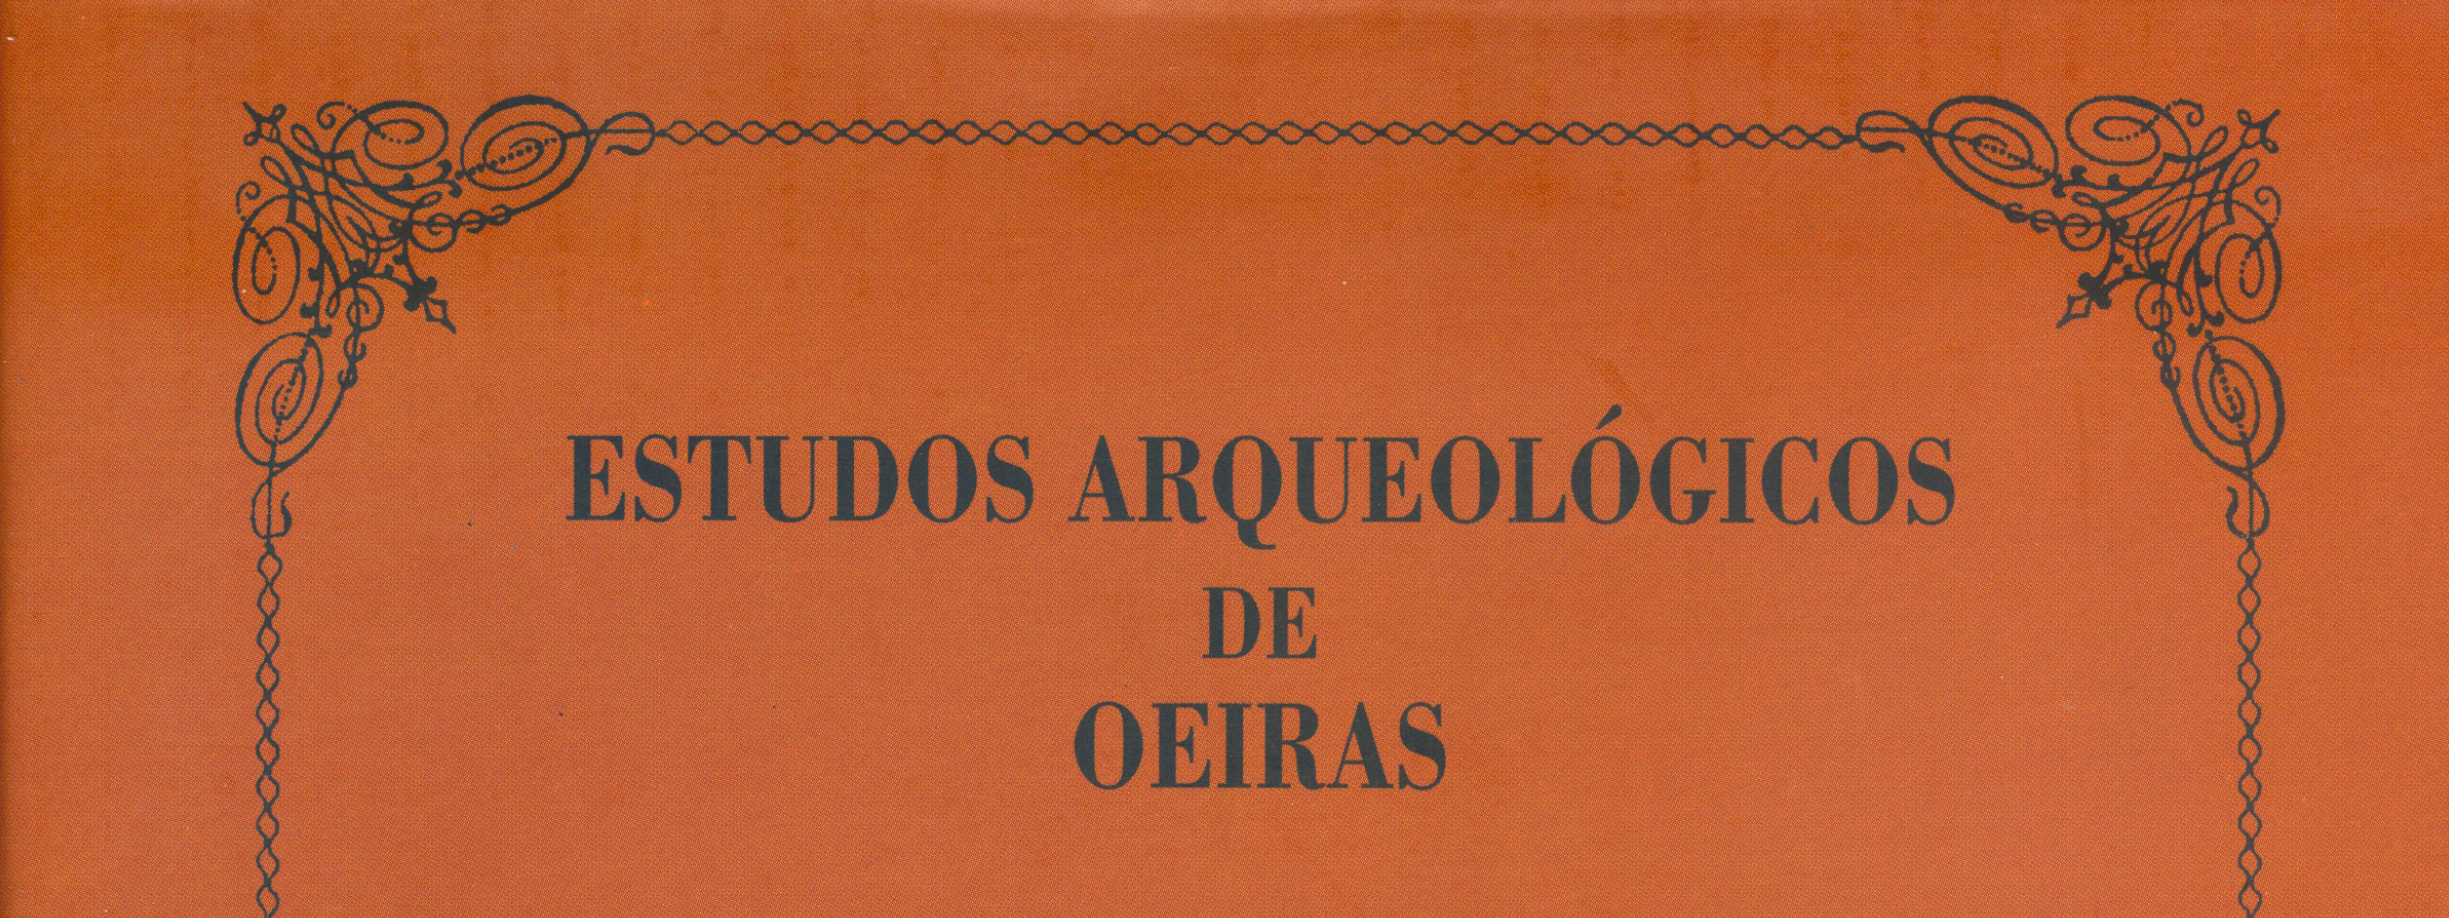 Estudos Arqueológicos de Oeiras, 18